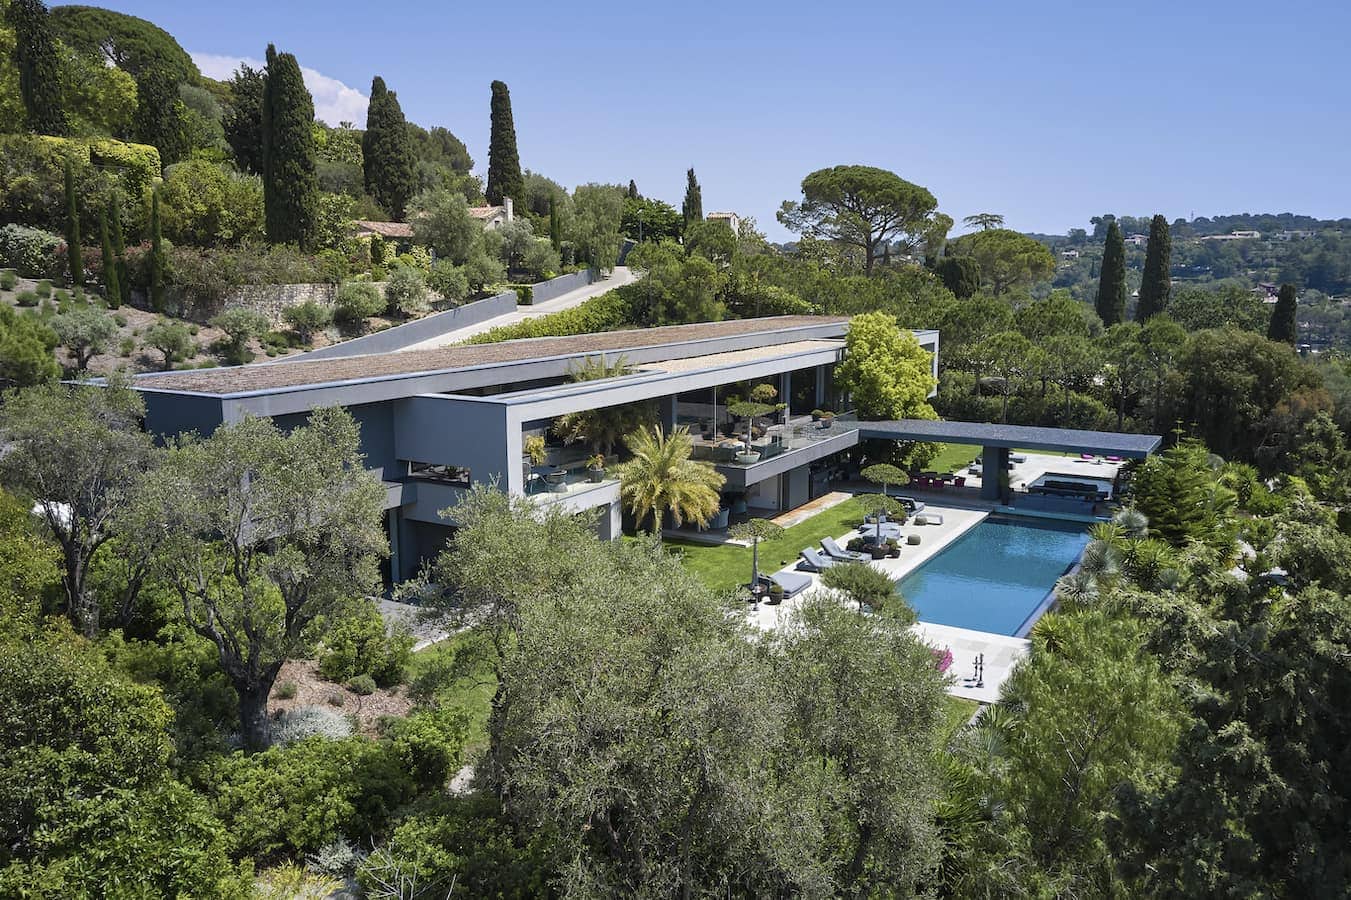 À ﬂanc de colline, cette villa dessinée par Muriel Ughetto épouse le paysage et la ligne d’horizon méditerranéenne. Naît une synergie étroite entre les volumes intérieurs, le jardin paysagé et les terrasses végétalisées